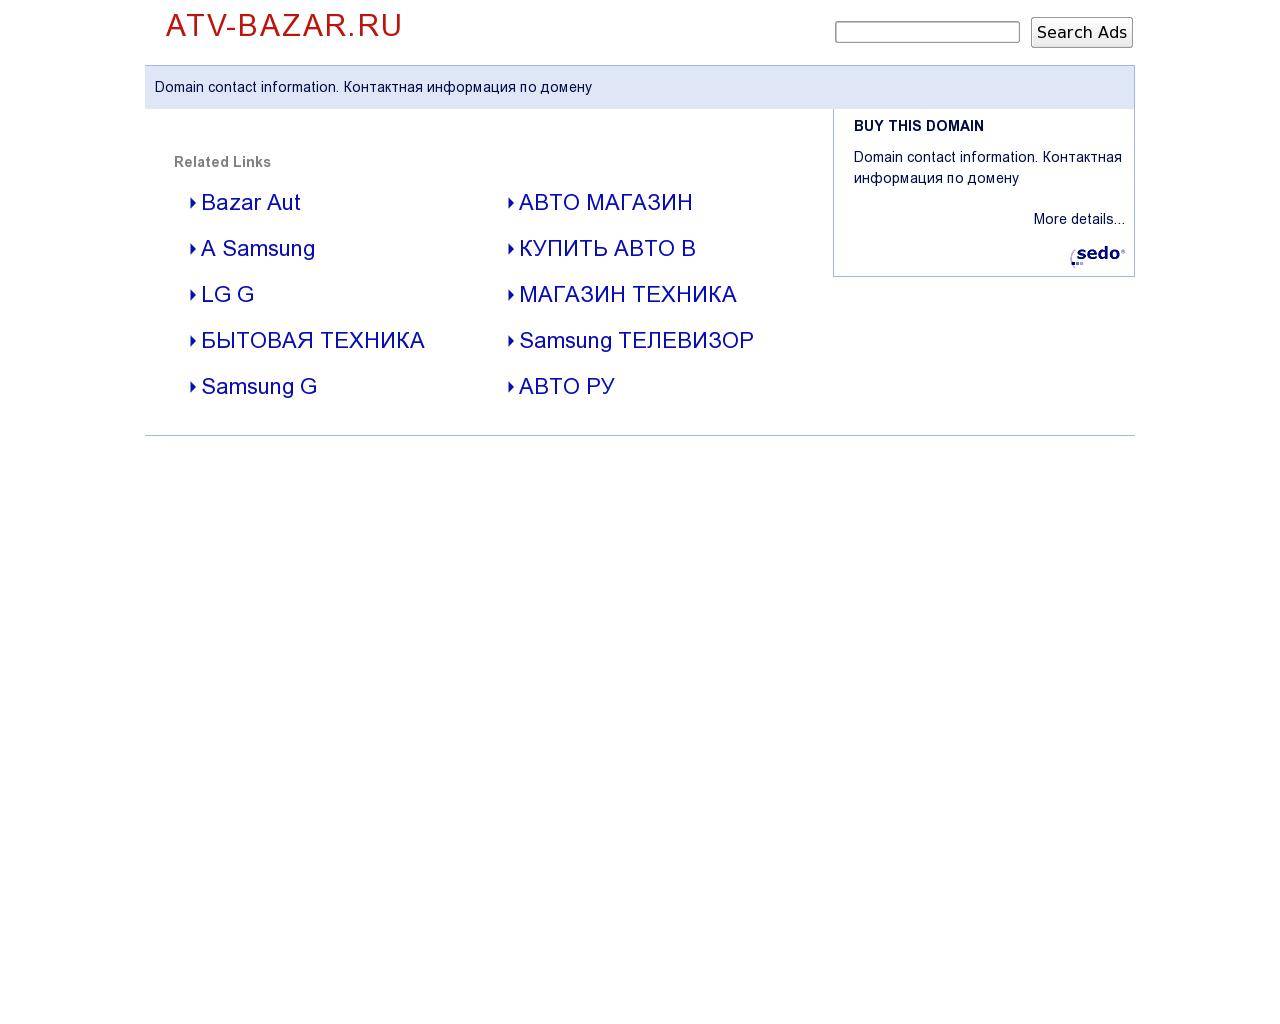 Изображение сайта atv-bazar.ru в разрешении 1280x1024